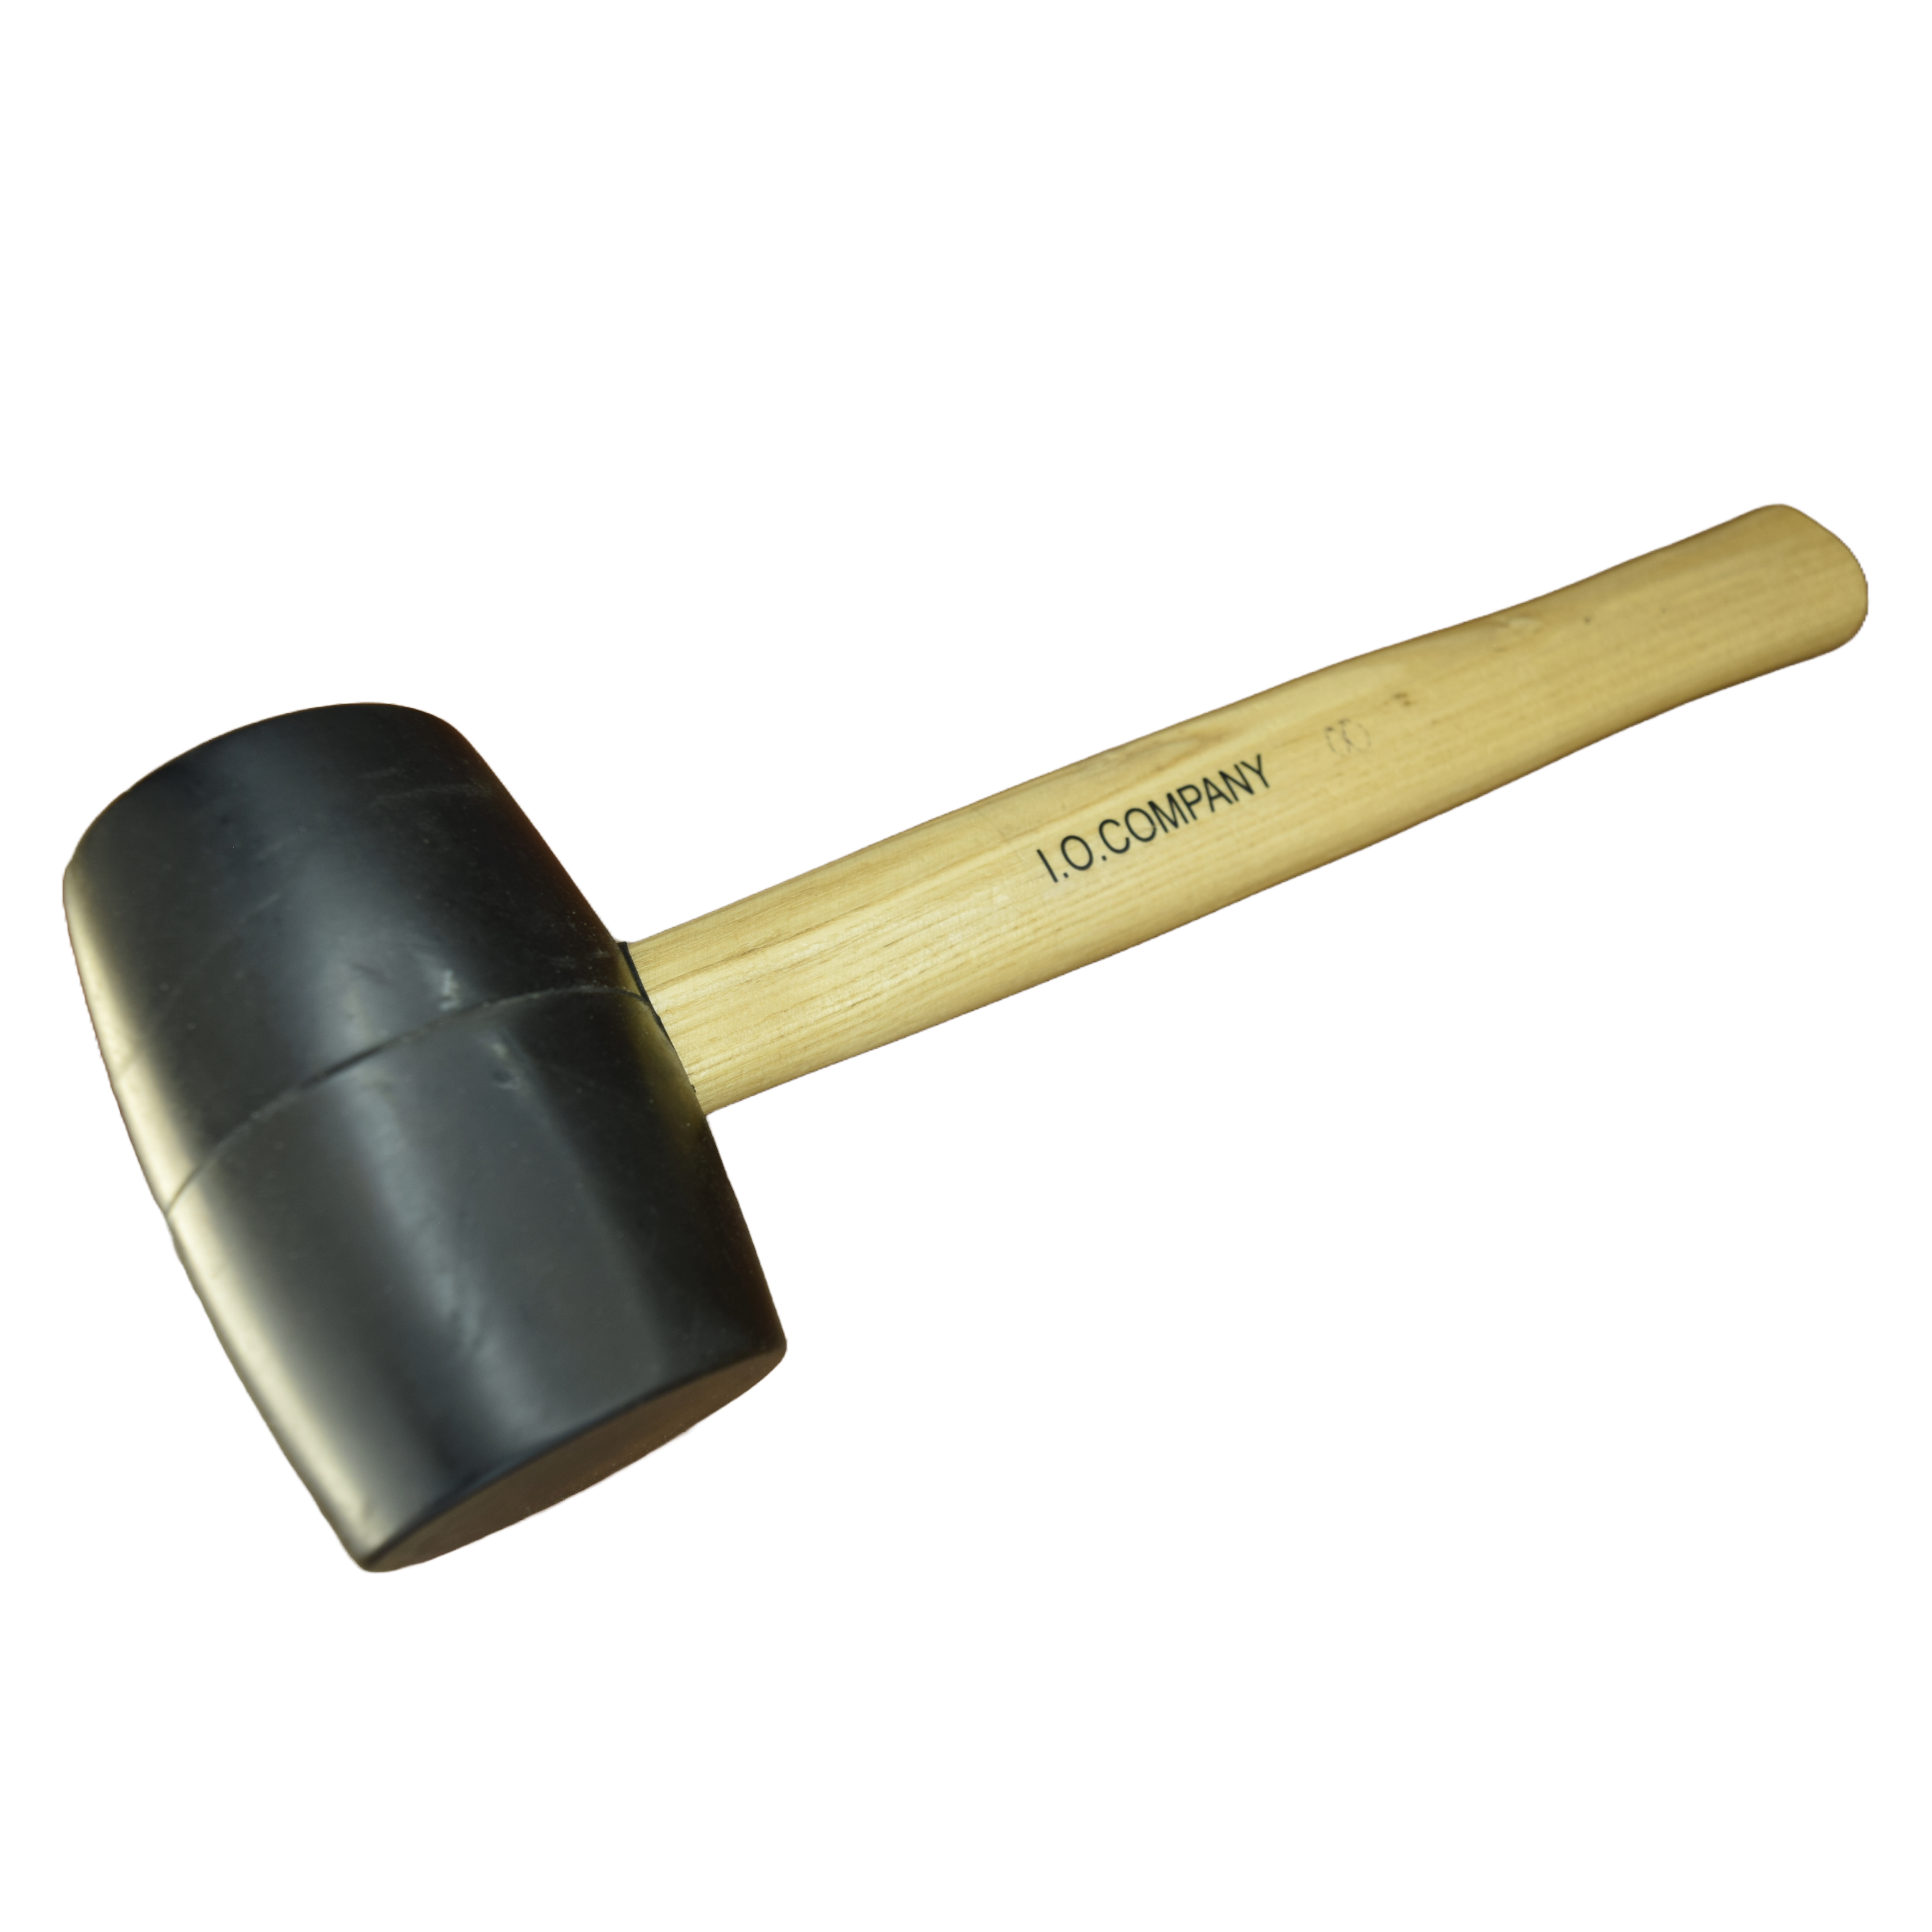  Utoolmart Mazo de goma y mango de madera con mango  antideslizante martillo de goma para construcción carpintería automotriz  3.3 lbs 1 unids : Todo lo demás